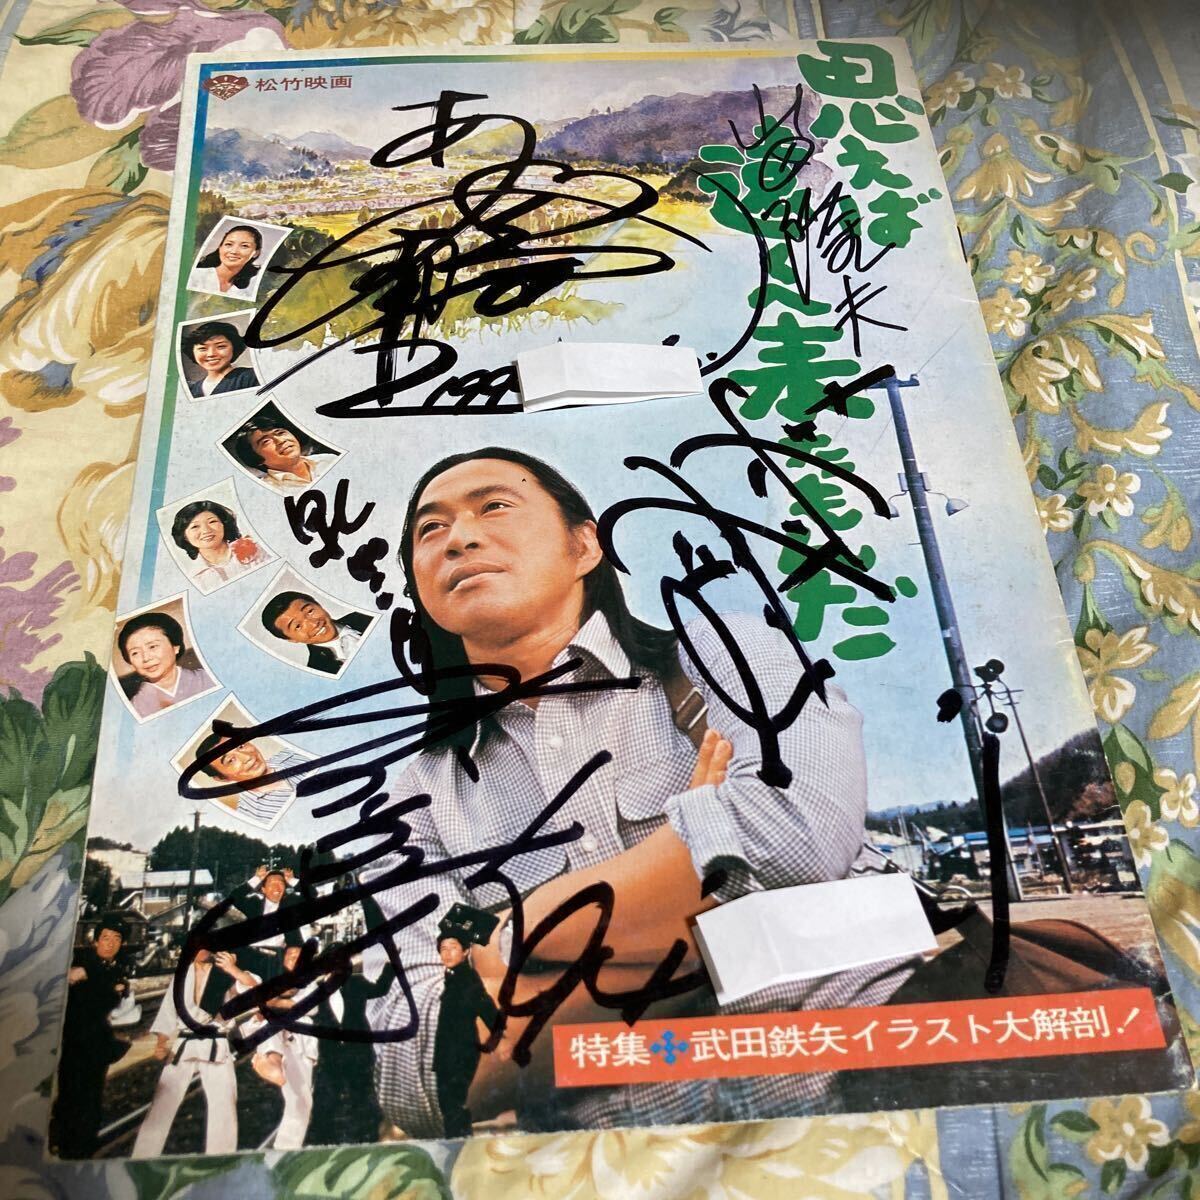  большой гора. . плата ( Doraemon ) автограф автограф *...... пришел ... брошюра re море ..( Takeda Tetsuya Chiba мир . средний . рисовое поле . мужчина ).. тихий .